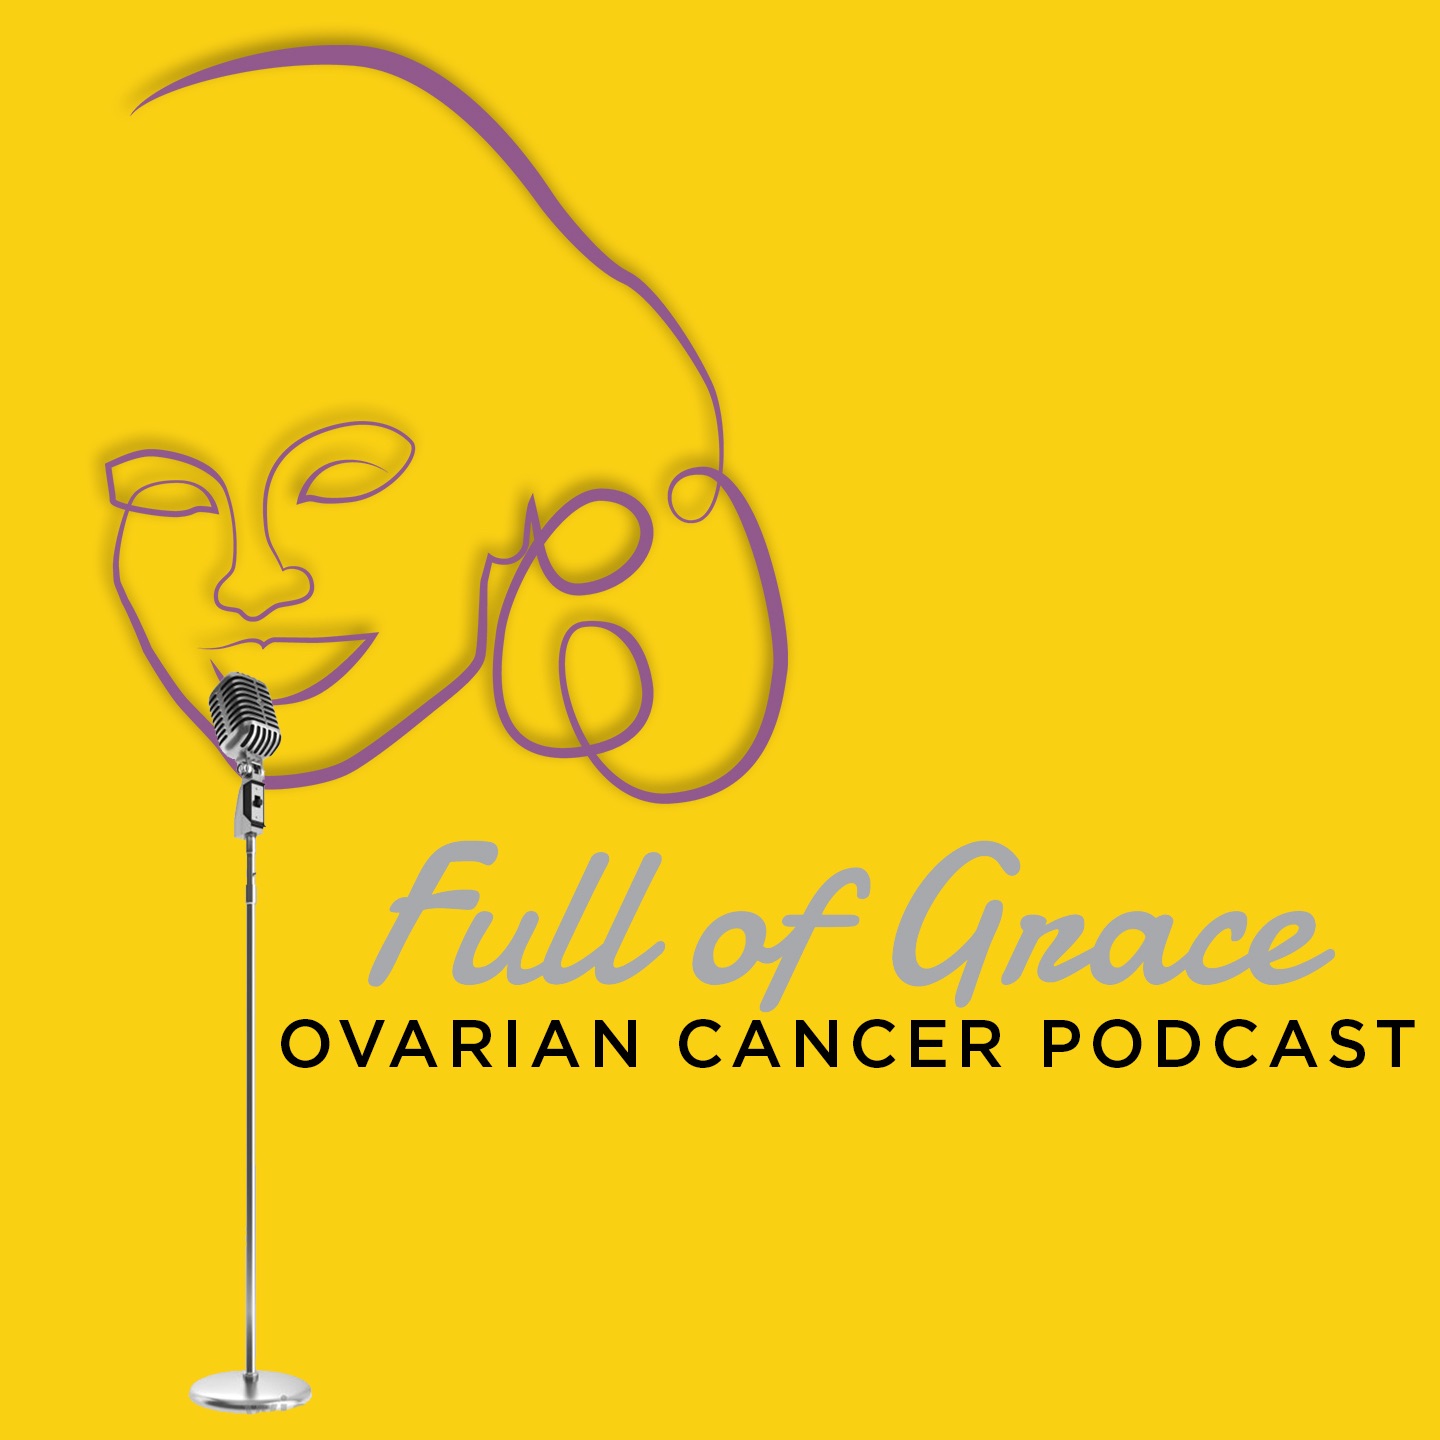 Full of Grace 5K Ovarian Cancer Podcast